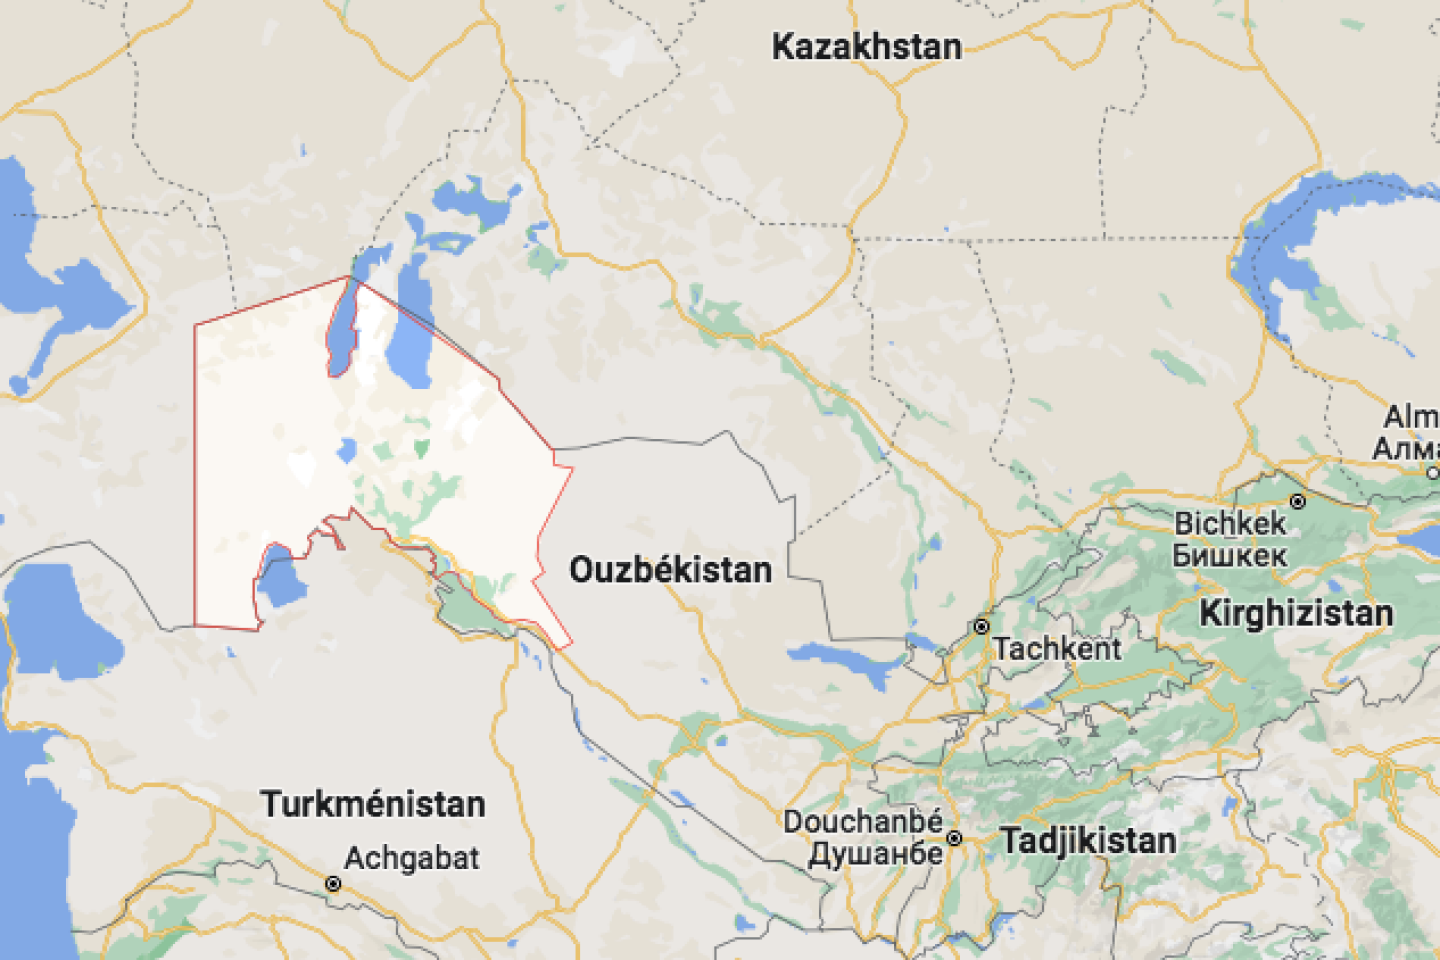 En Ouzbékistan, le president recule après une rare manifestazioni antigouvernementale